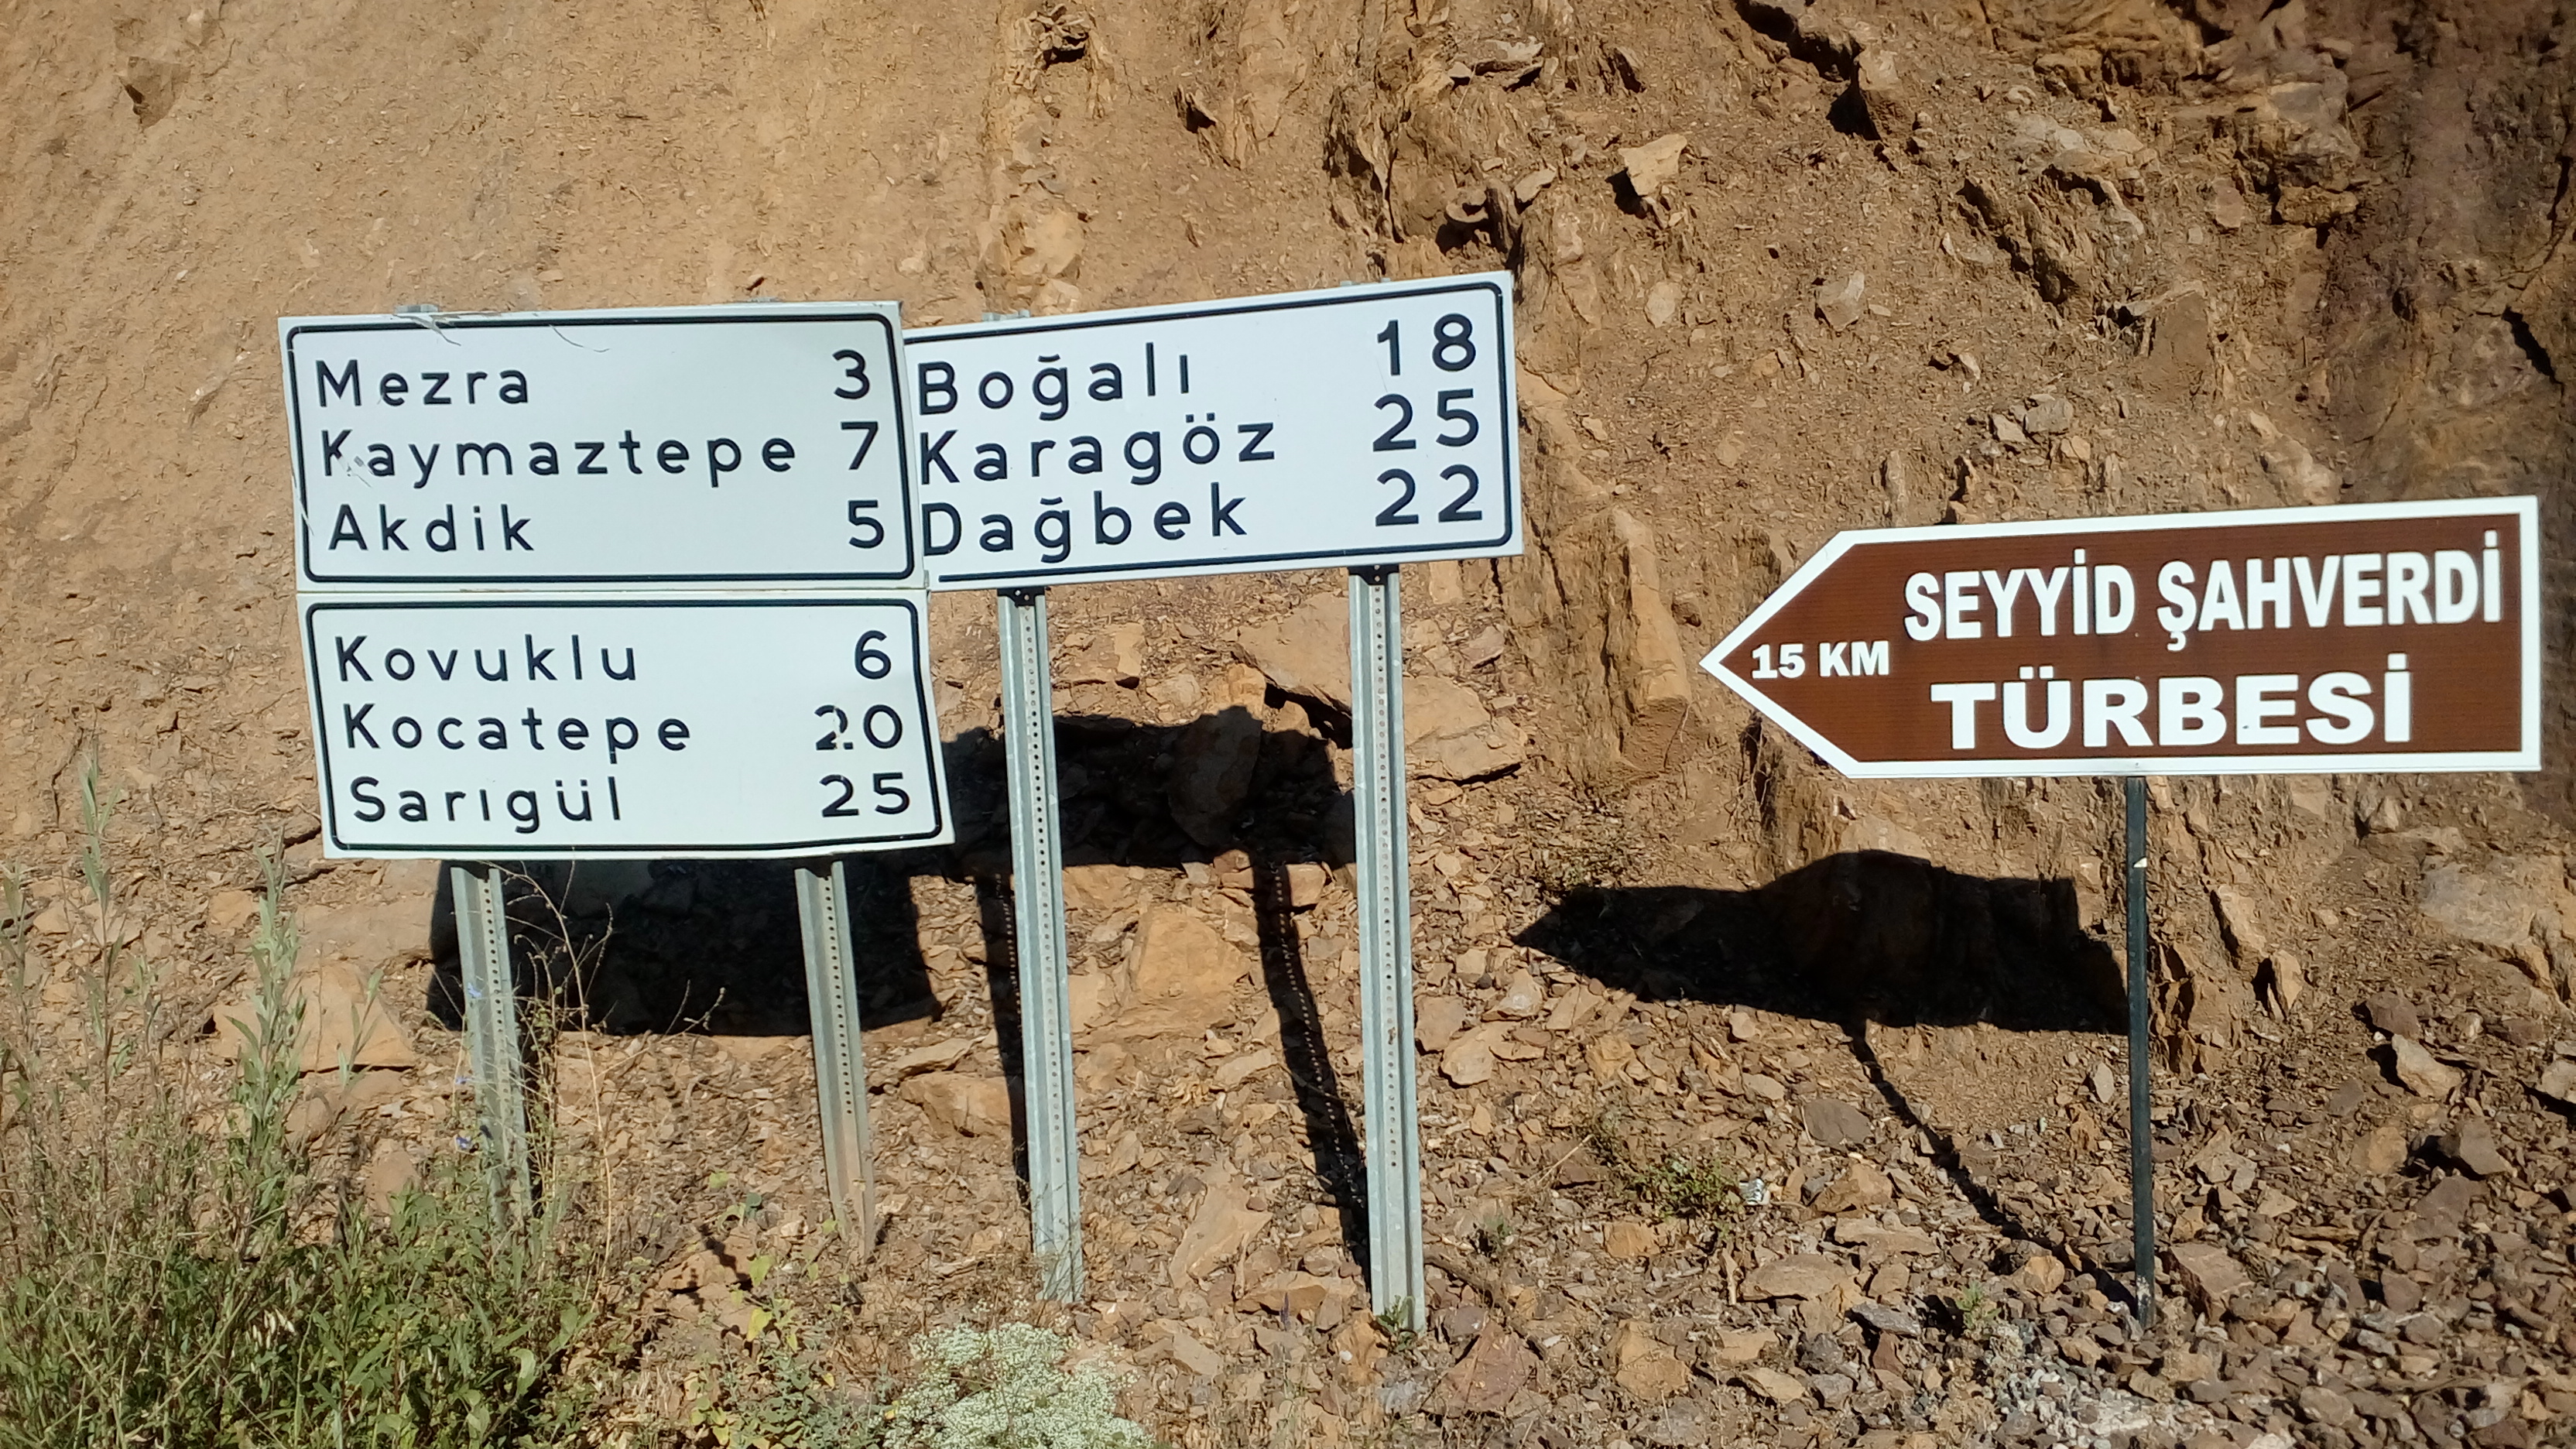 Pülümür Kırmızıköprü yol ayrımındaki köy tabelaları (Kaymaztepe, Akdik ve Kovuklu'dan daha yakın, ama tabelacılara göre uzak!)